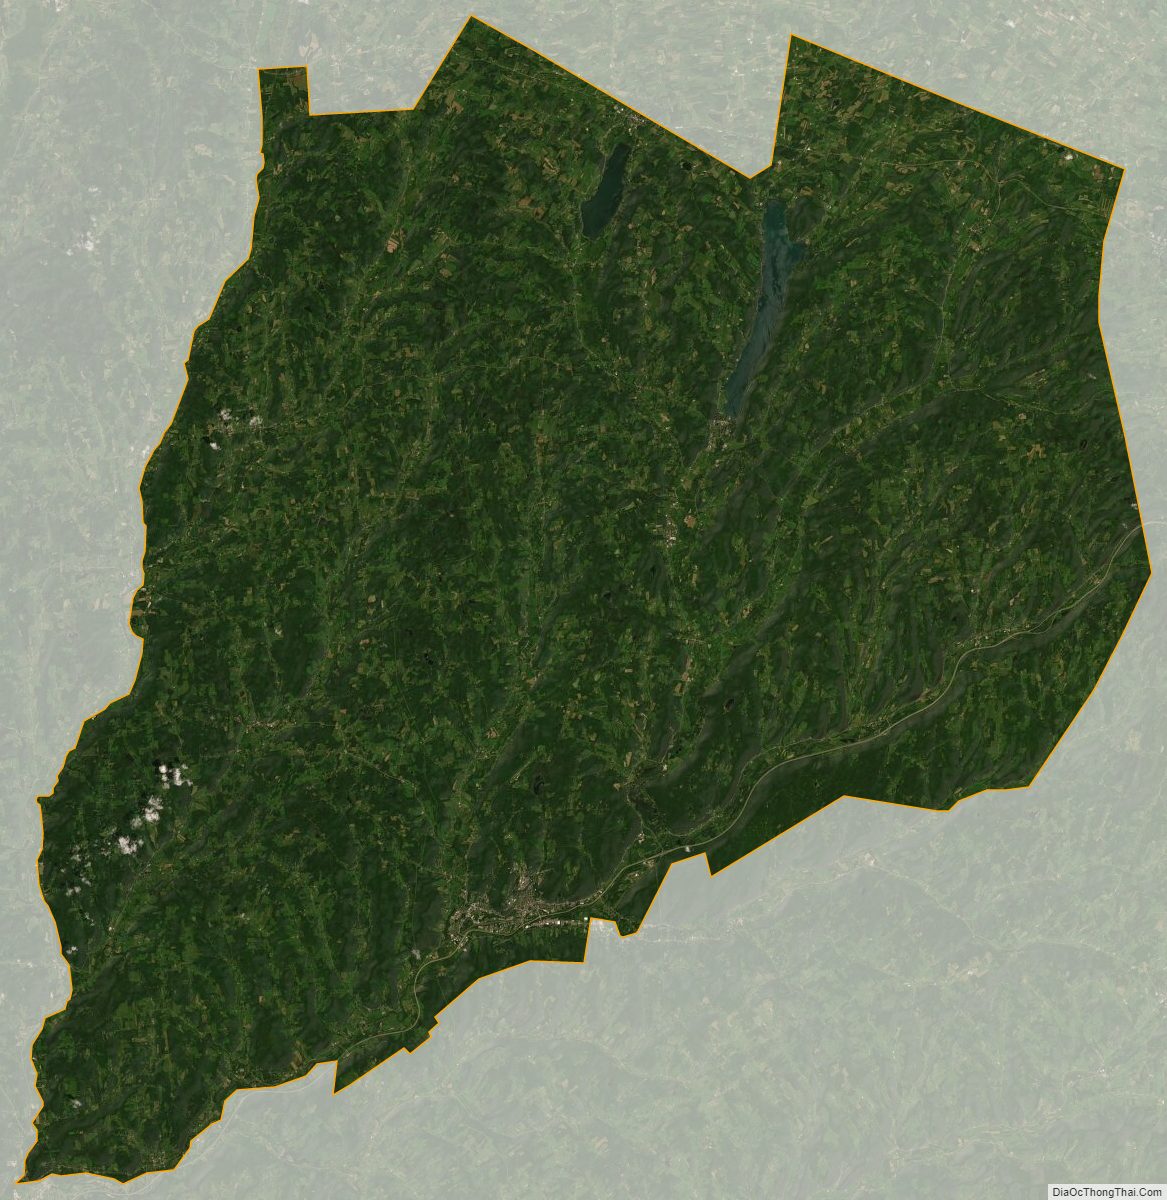 Satellite map of Otsego County, New York